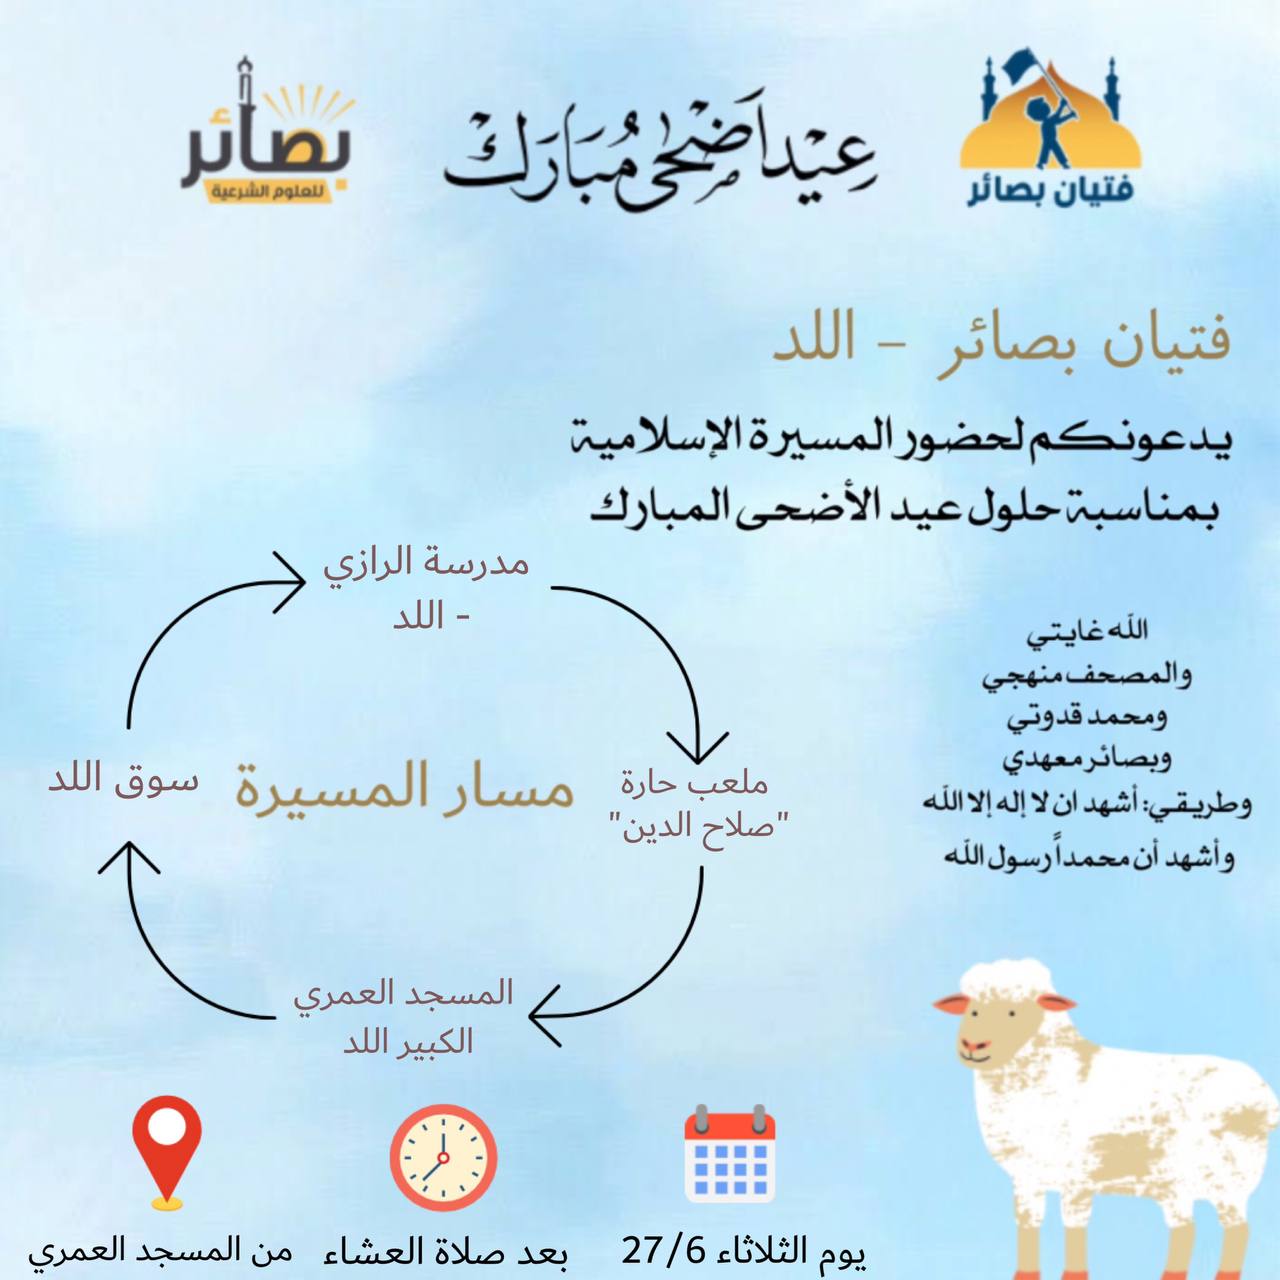 دعوات للمشاركة في مسيرة عيد الأضحى بمدينة اللد